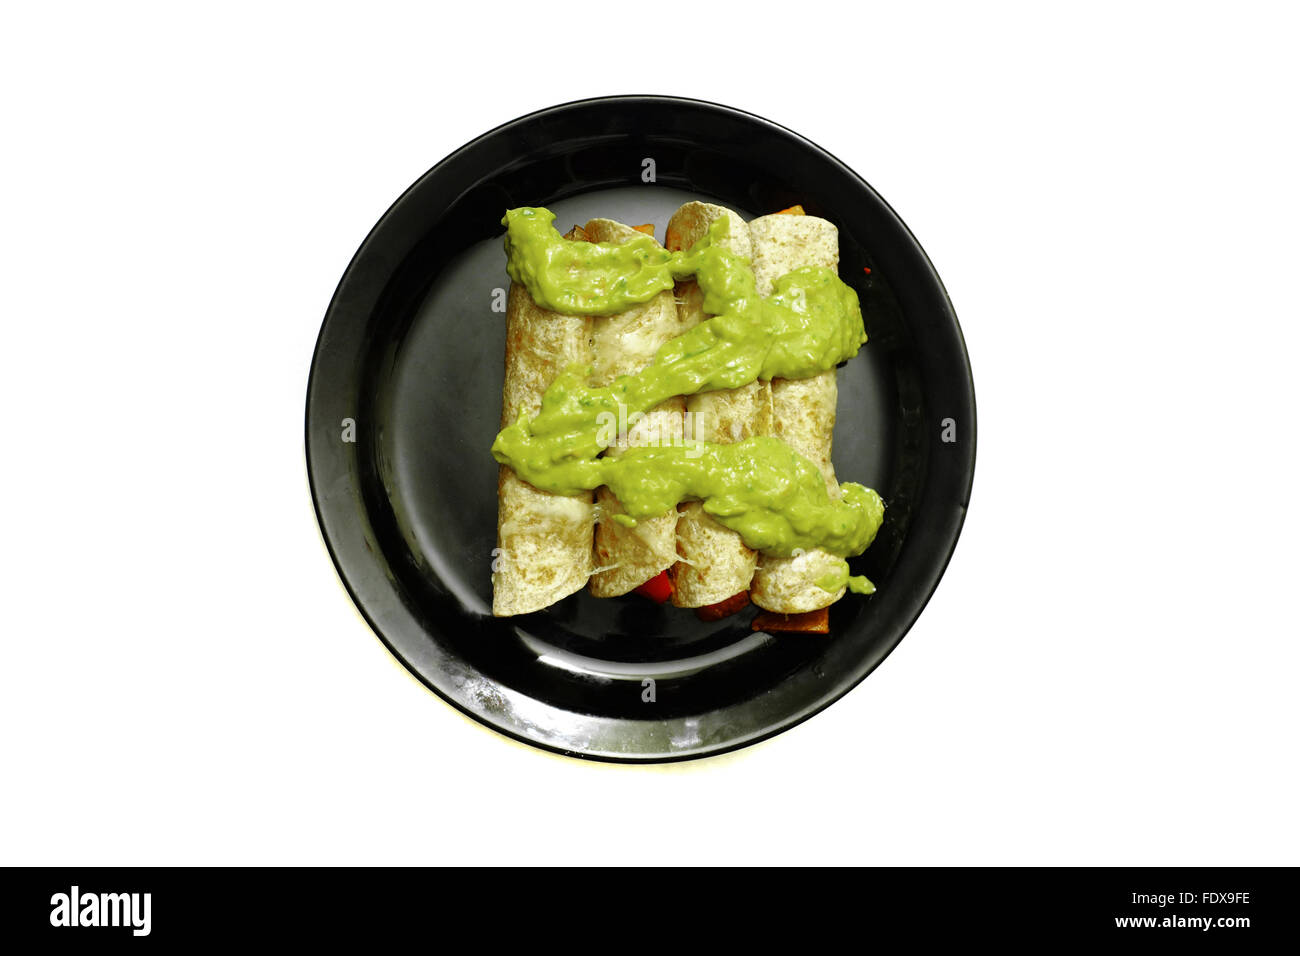 Burrito cotto ricoperto in salsa guacamole su una piastra nera fotografati contro uno sfondo bianco Foto Stock